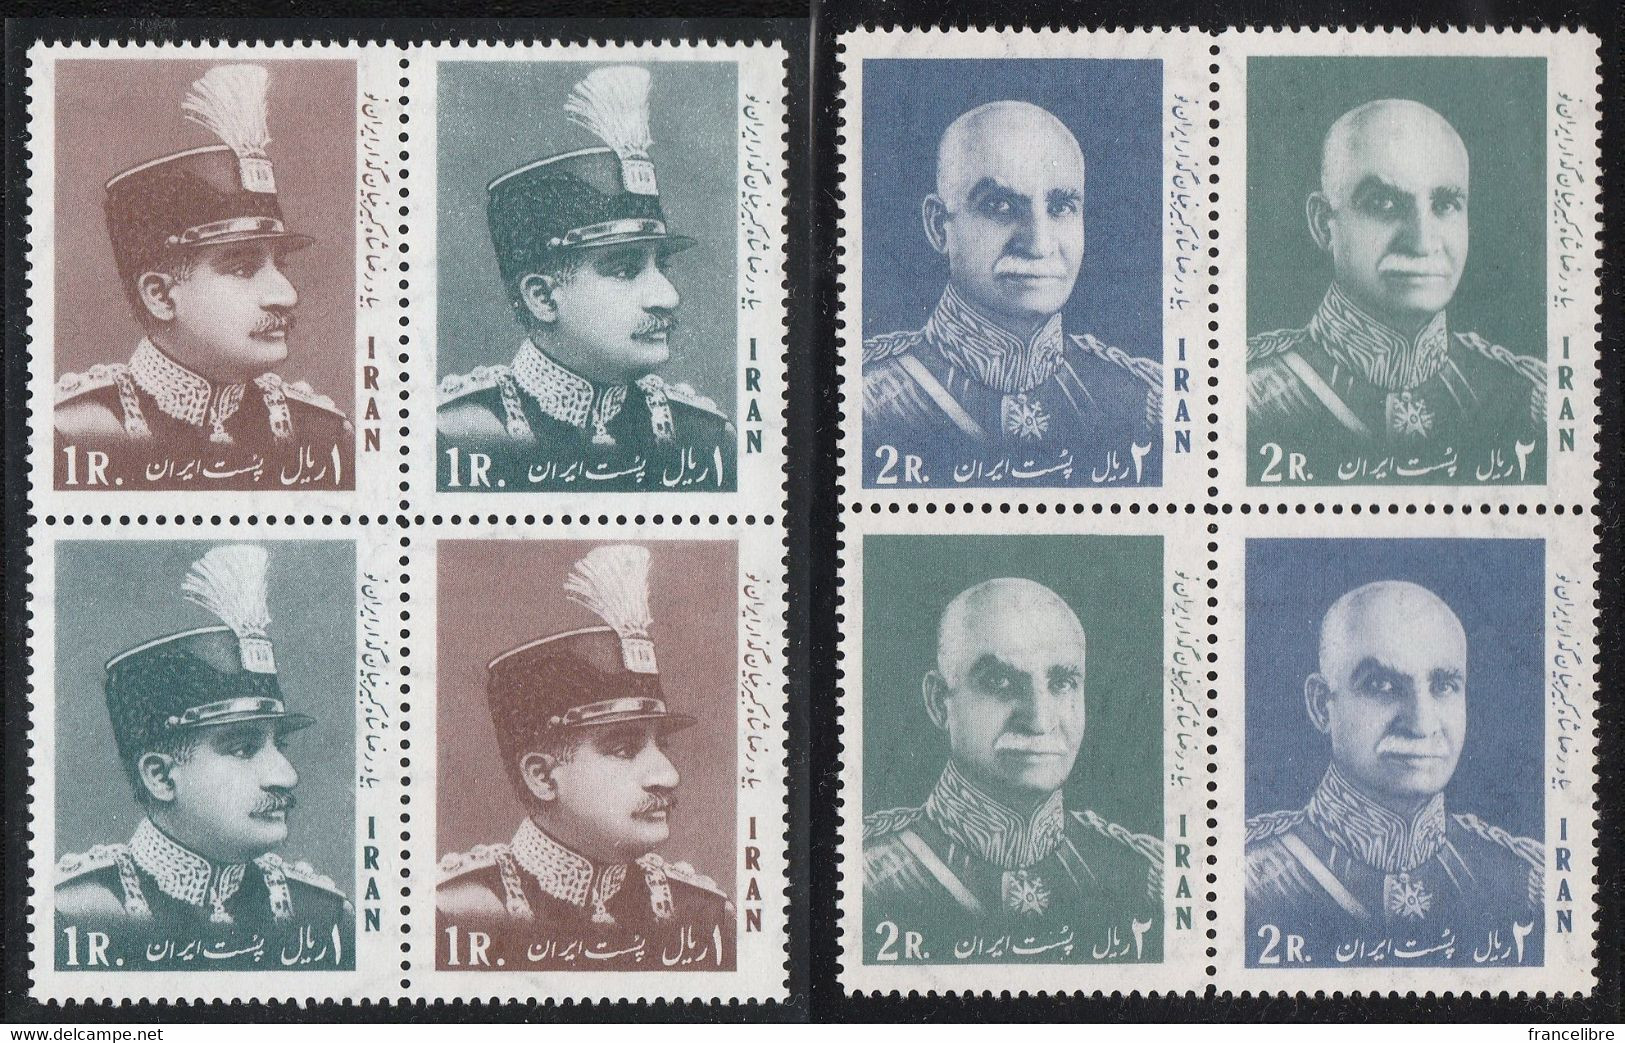 Iran,  King Reza Shah Pahlavi 2 Se-Tenant Sets 1966, As Per Scan, Mint Never Hihged. - Iran